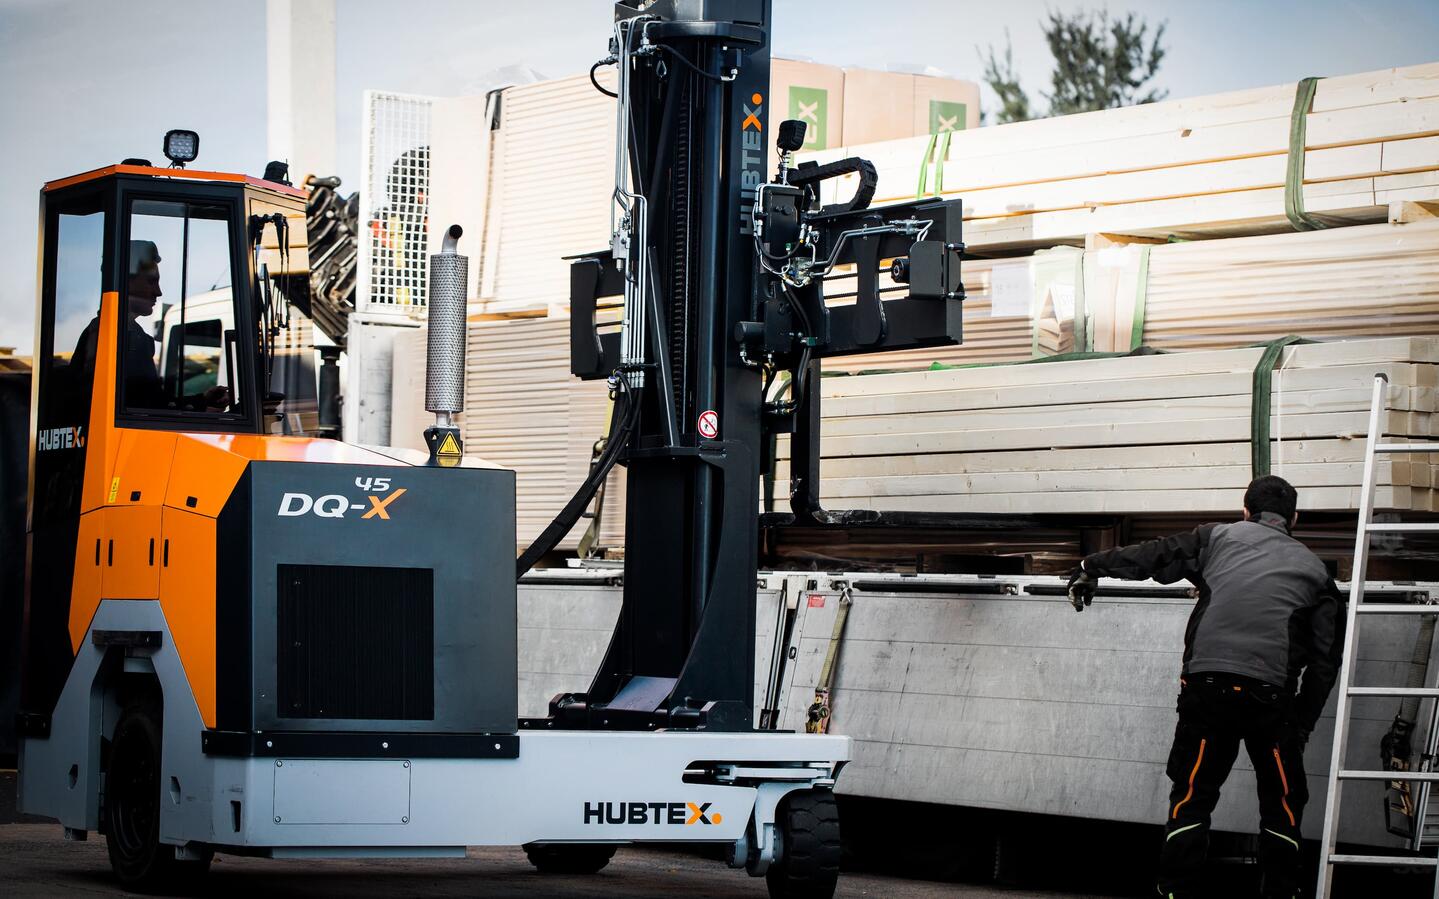 Le DQ-X 45 de HUBTEX pour la manutention de panneaux de bois lourds et volumineux